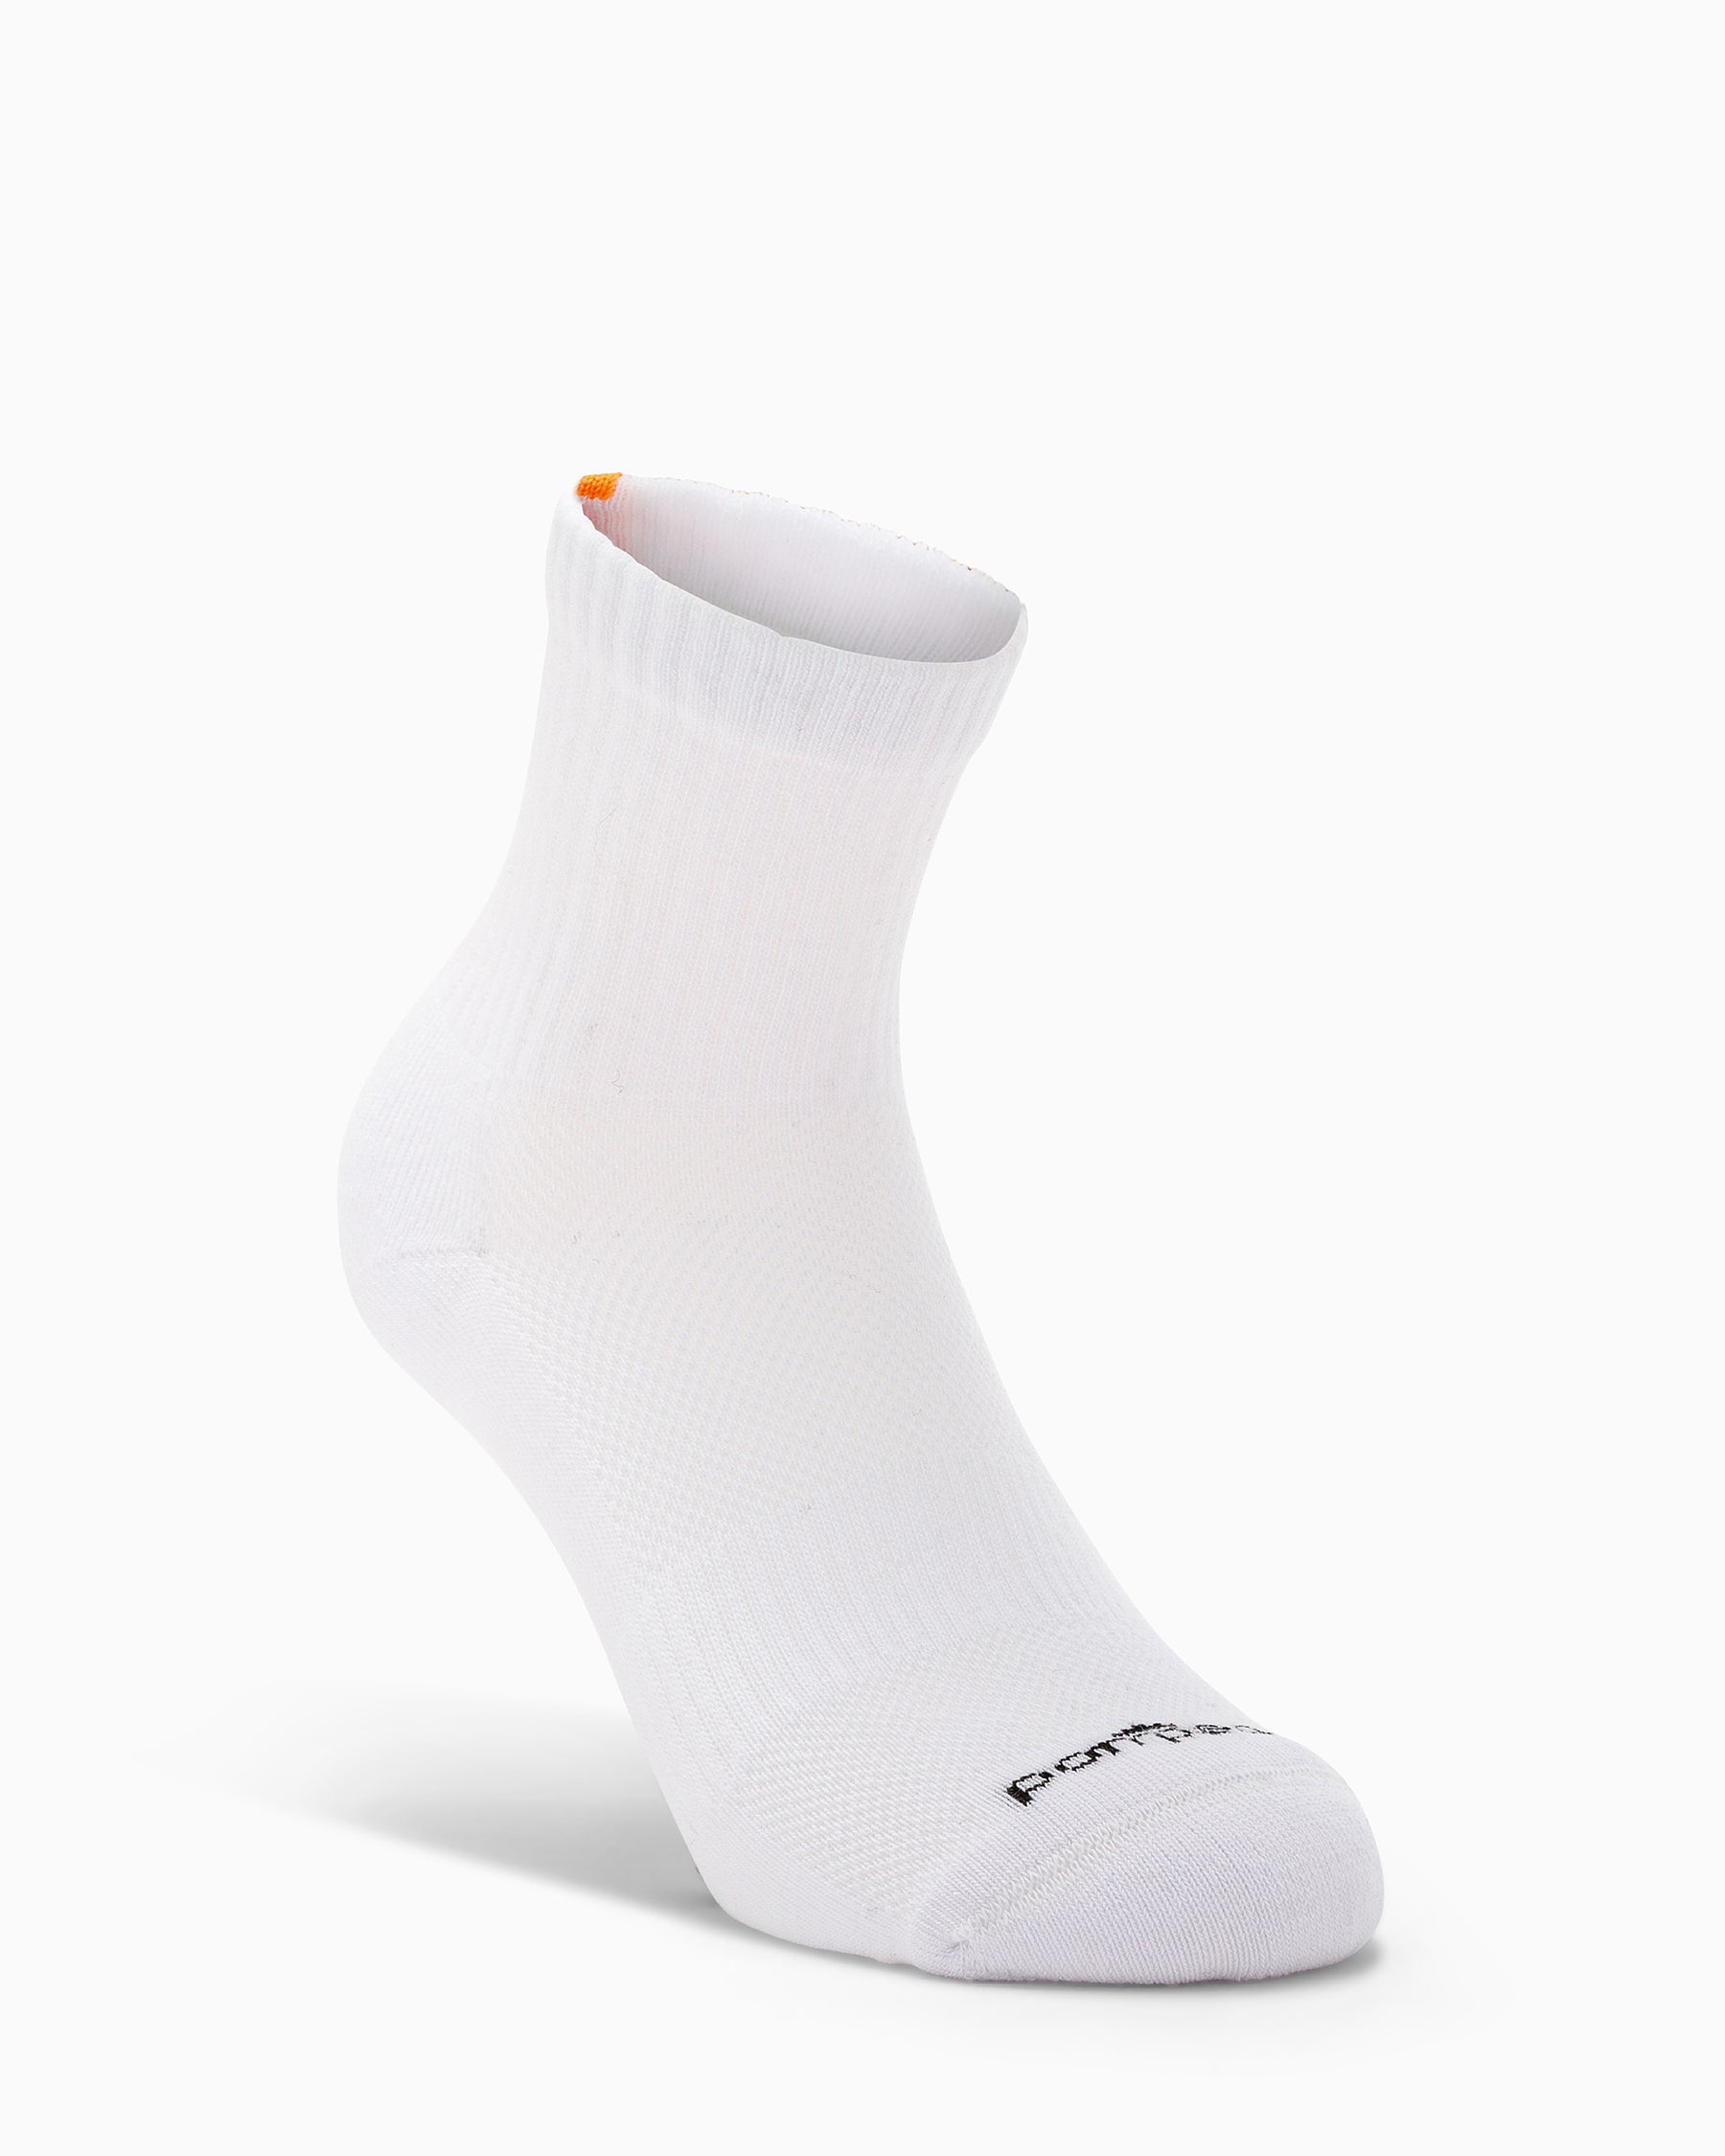 Short unisex tennis socks Milan